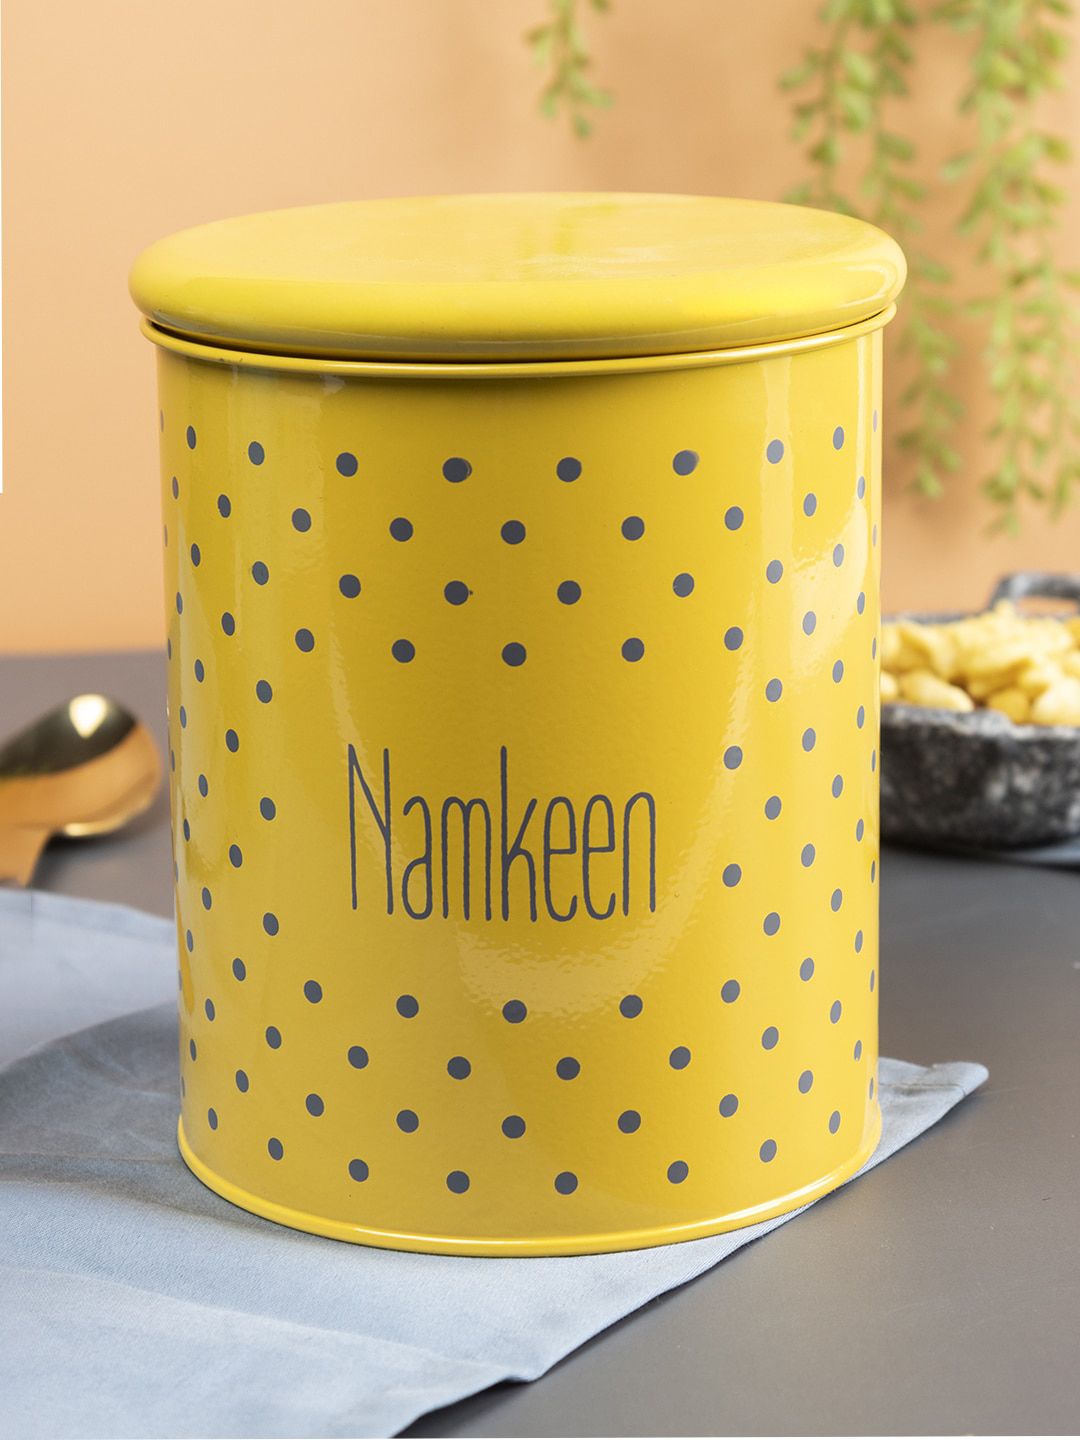 MARKET99 Yellow Printed Jar Namkeen Kitchen Storage Price in India